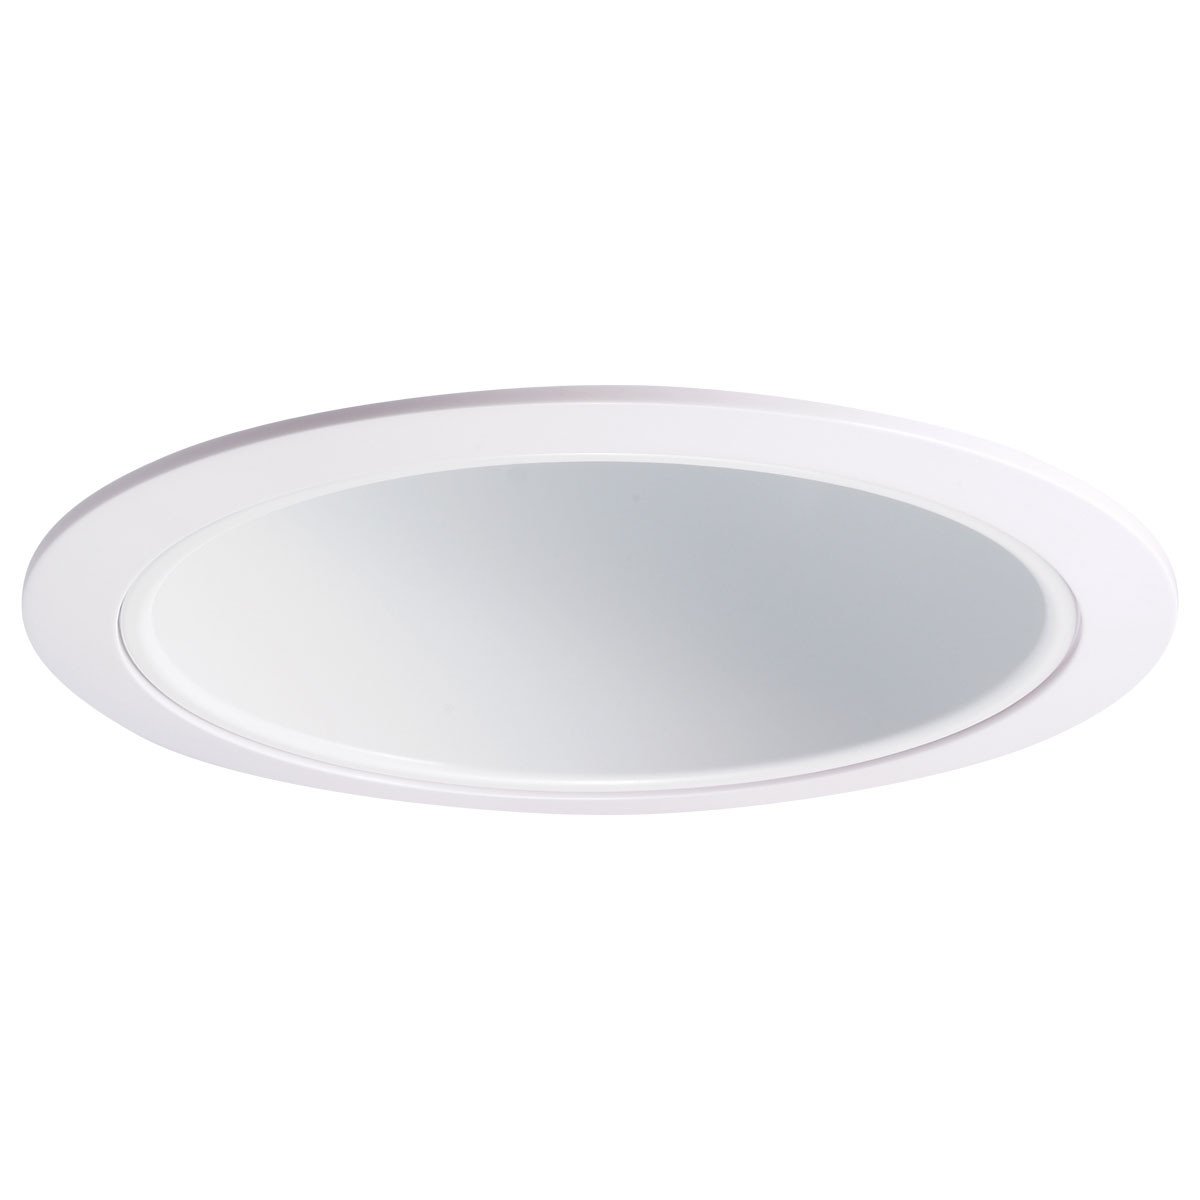 6" Recessed Trim - Specular White Reflector Airtight Cone, White Trim Recessed Nora Lighting 